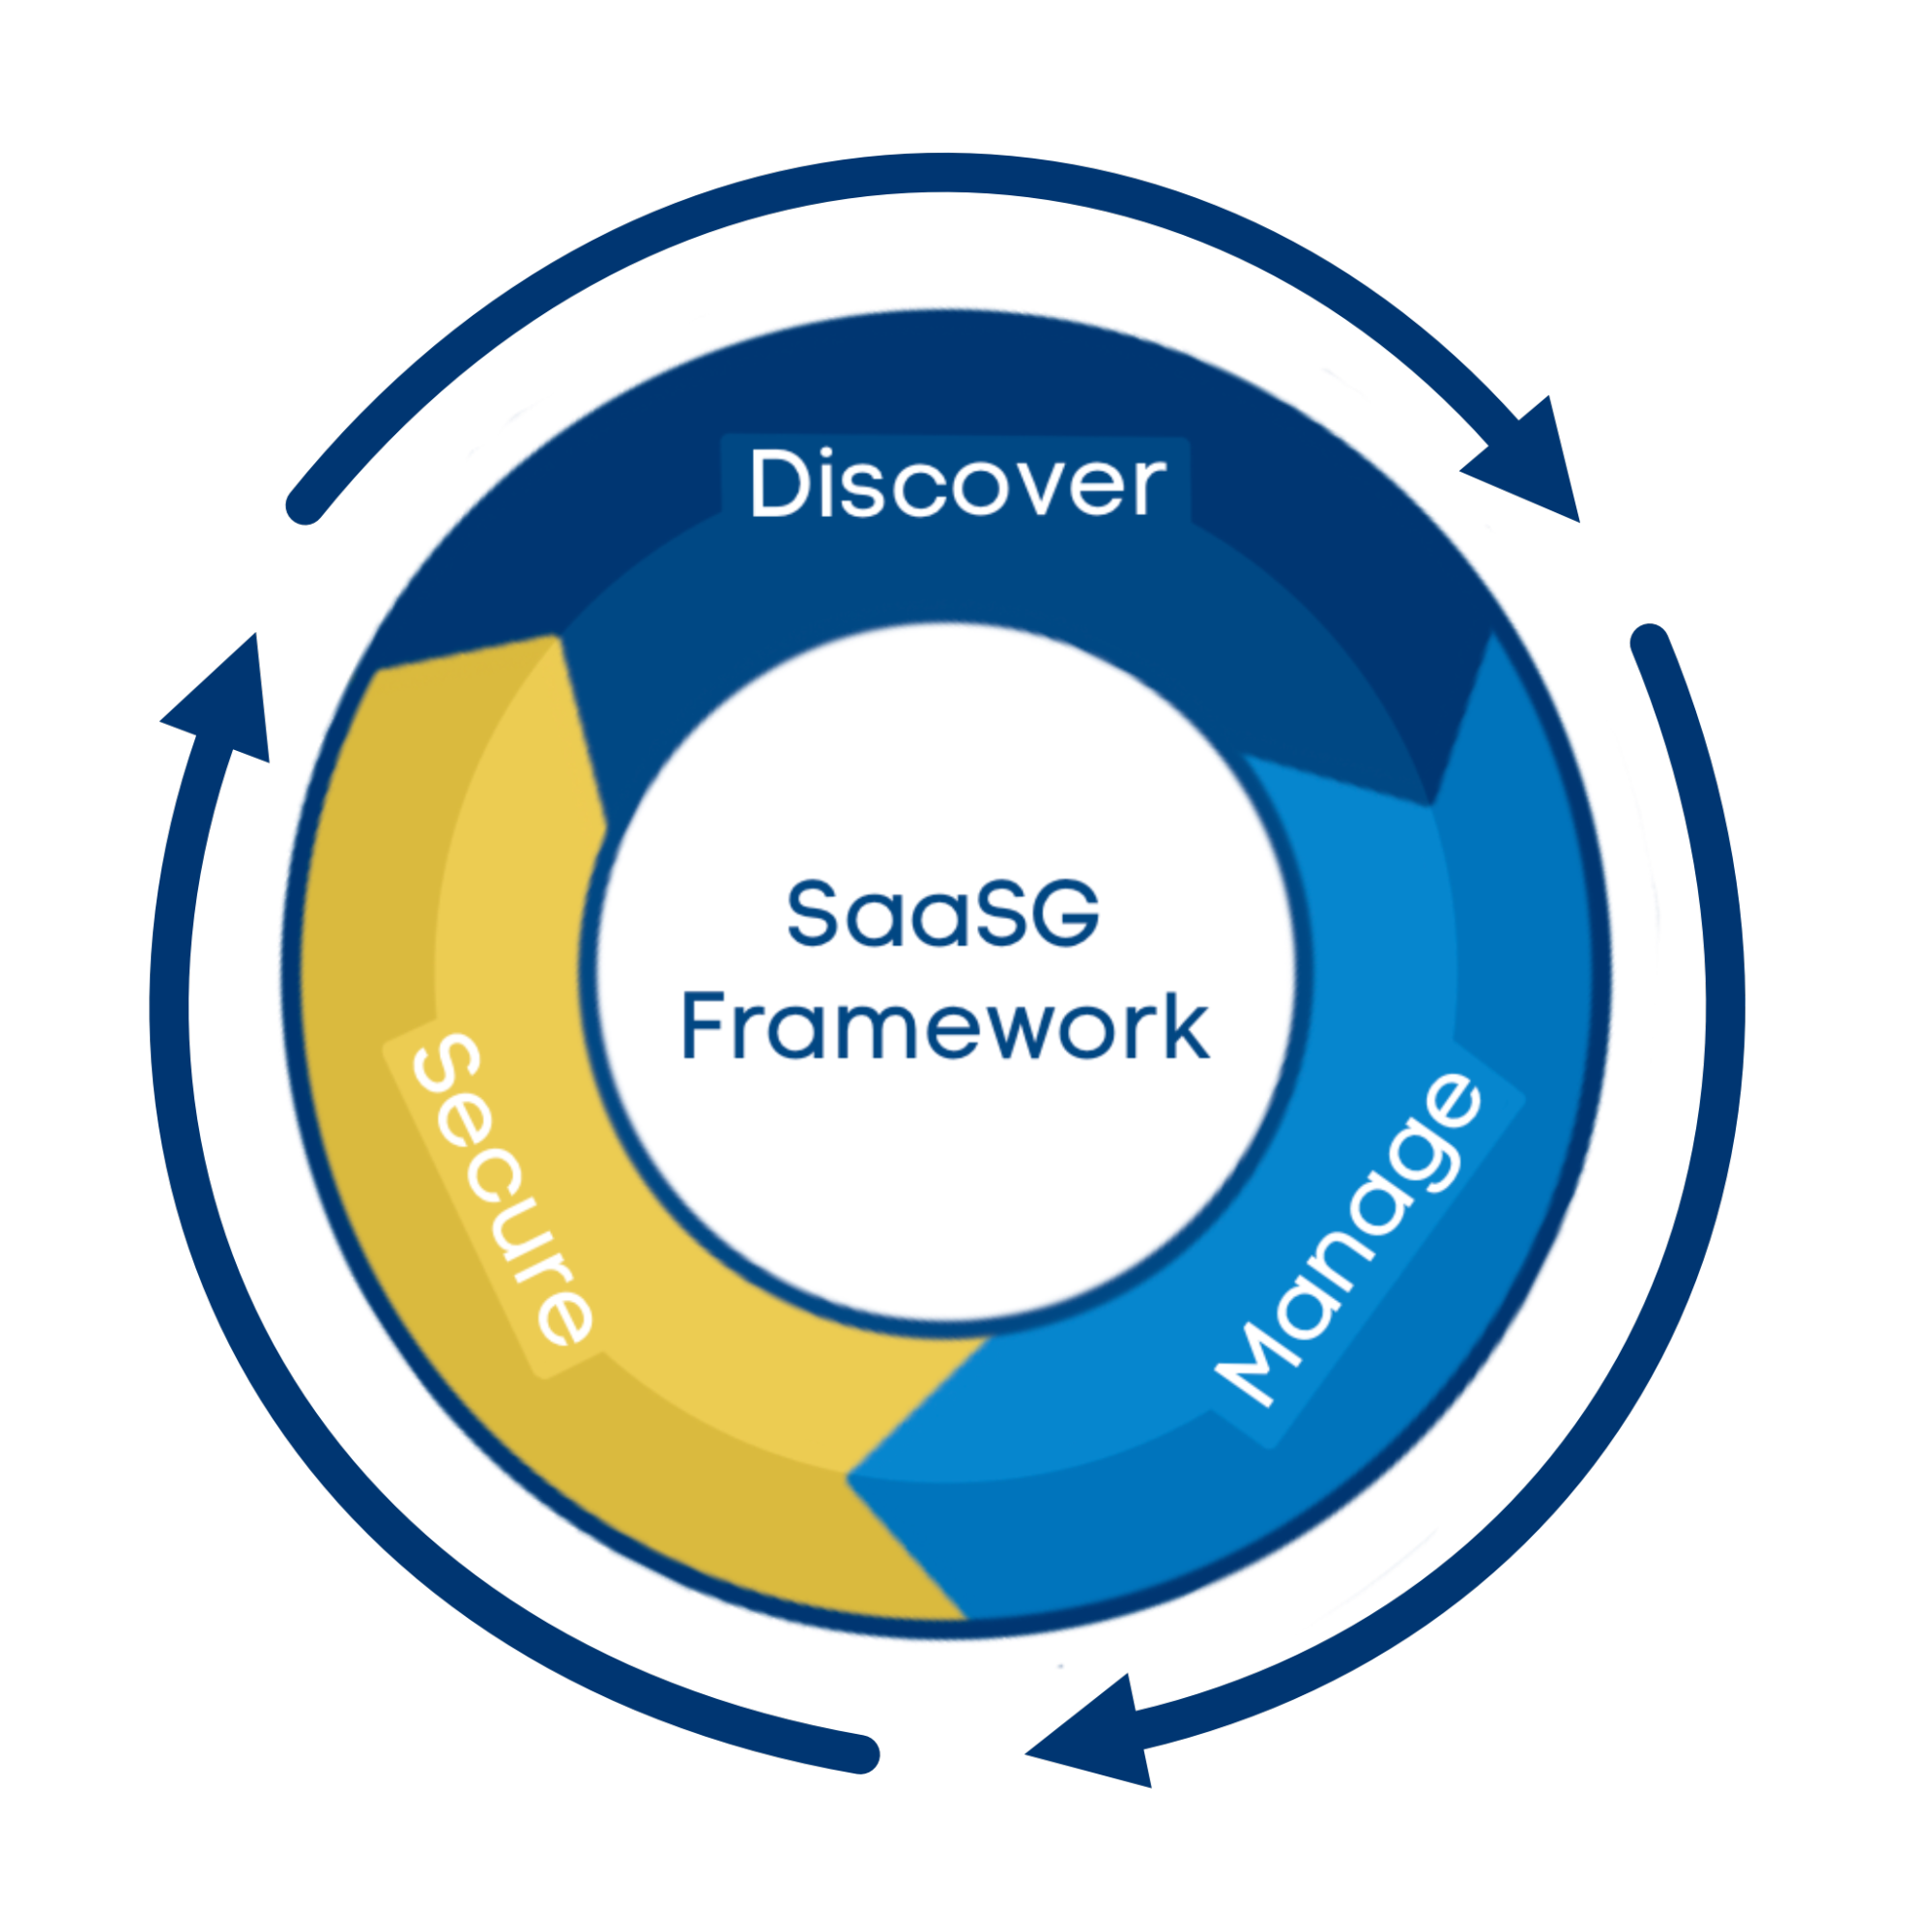 SaaSG Framework